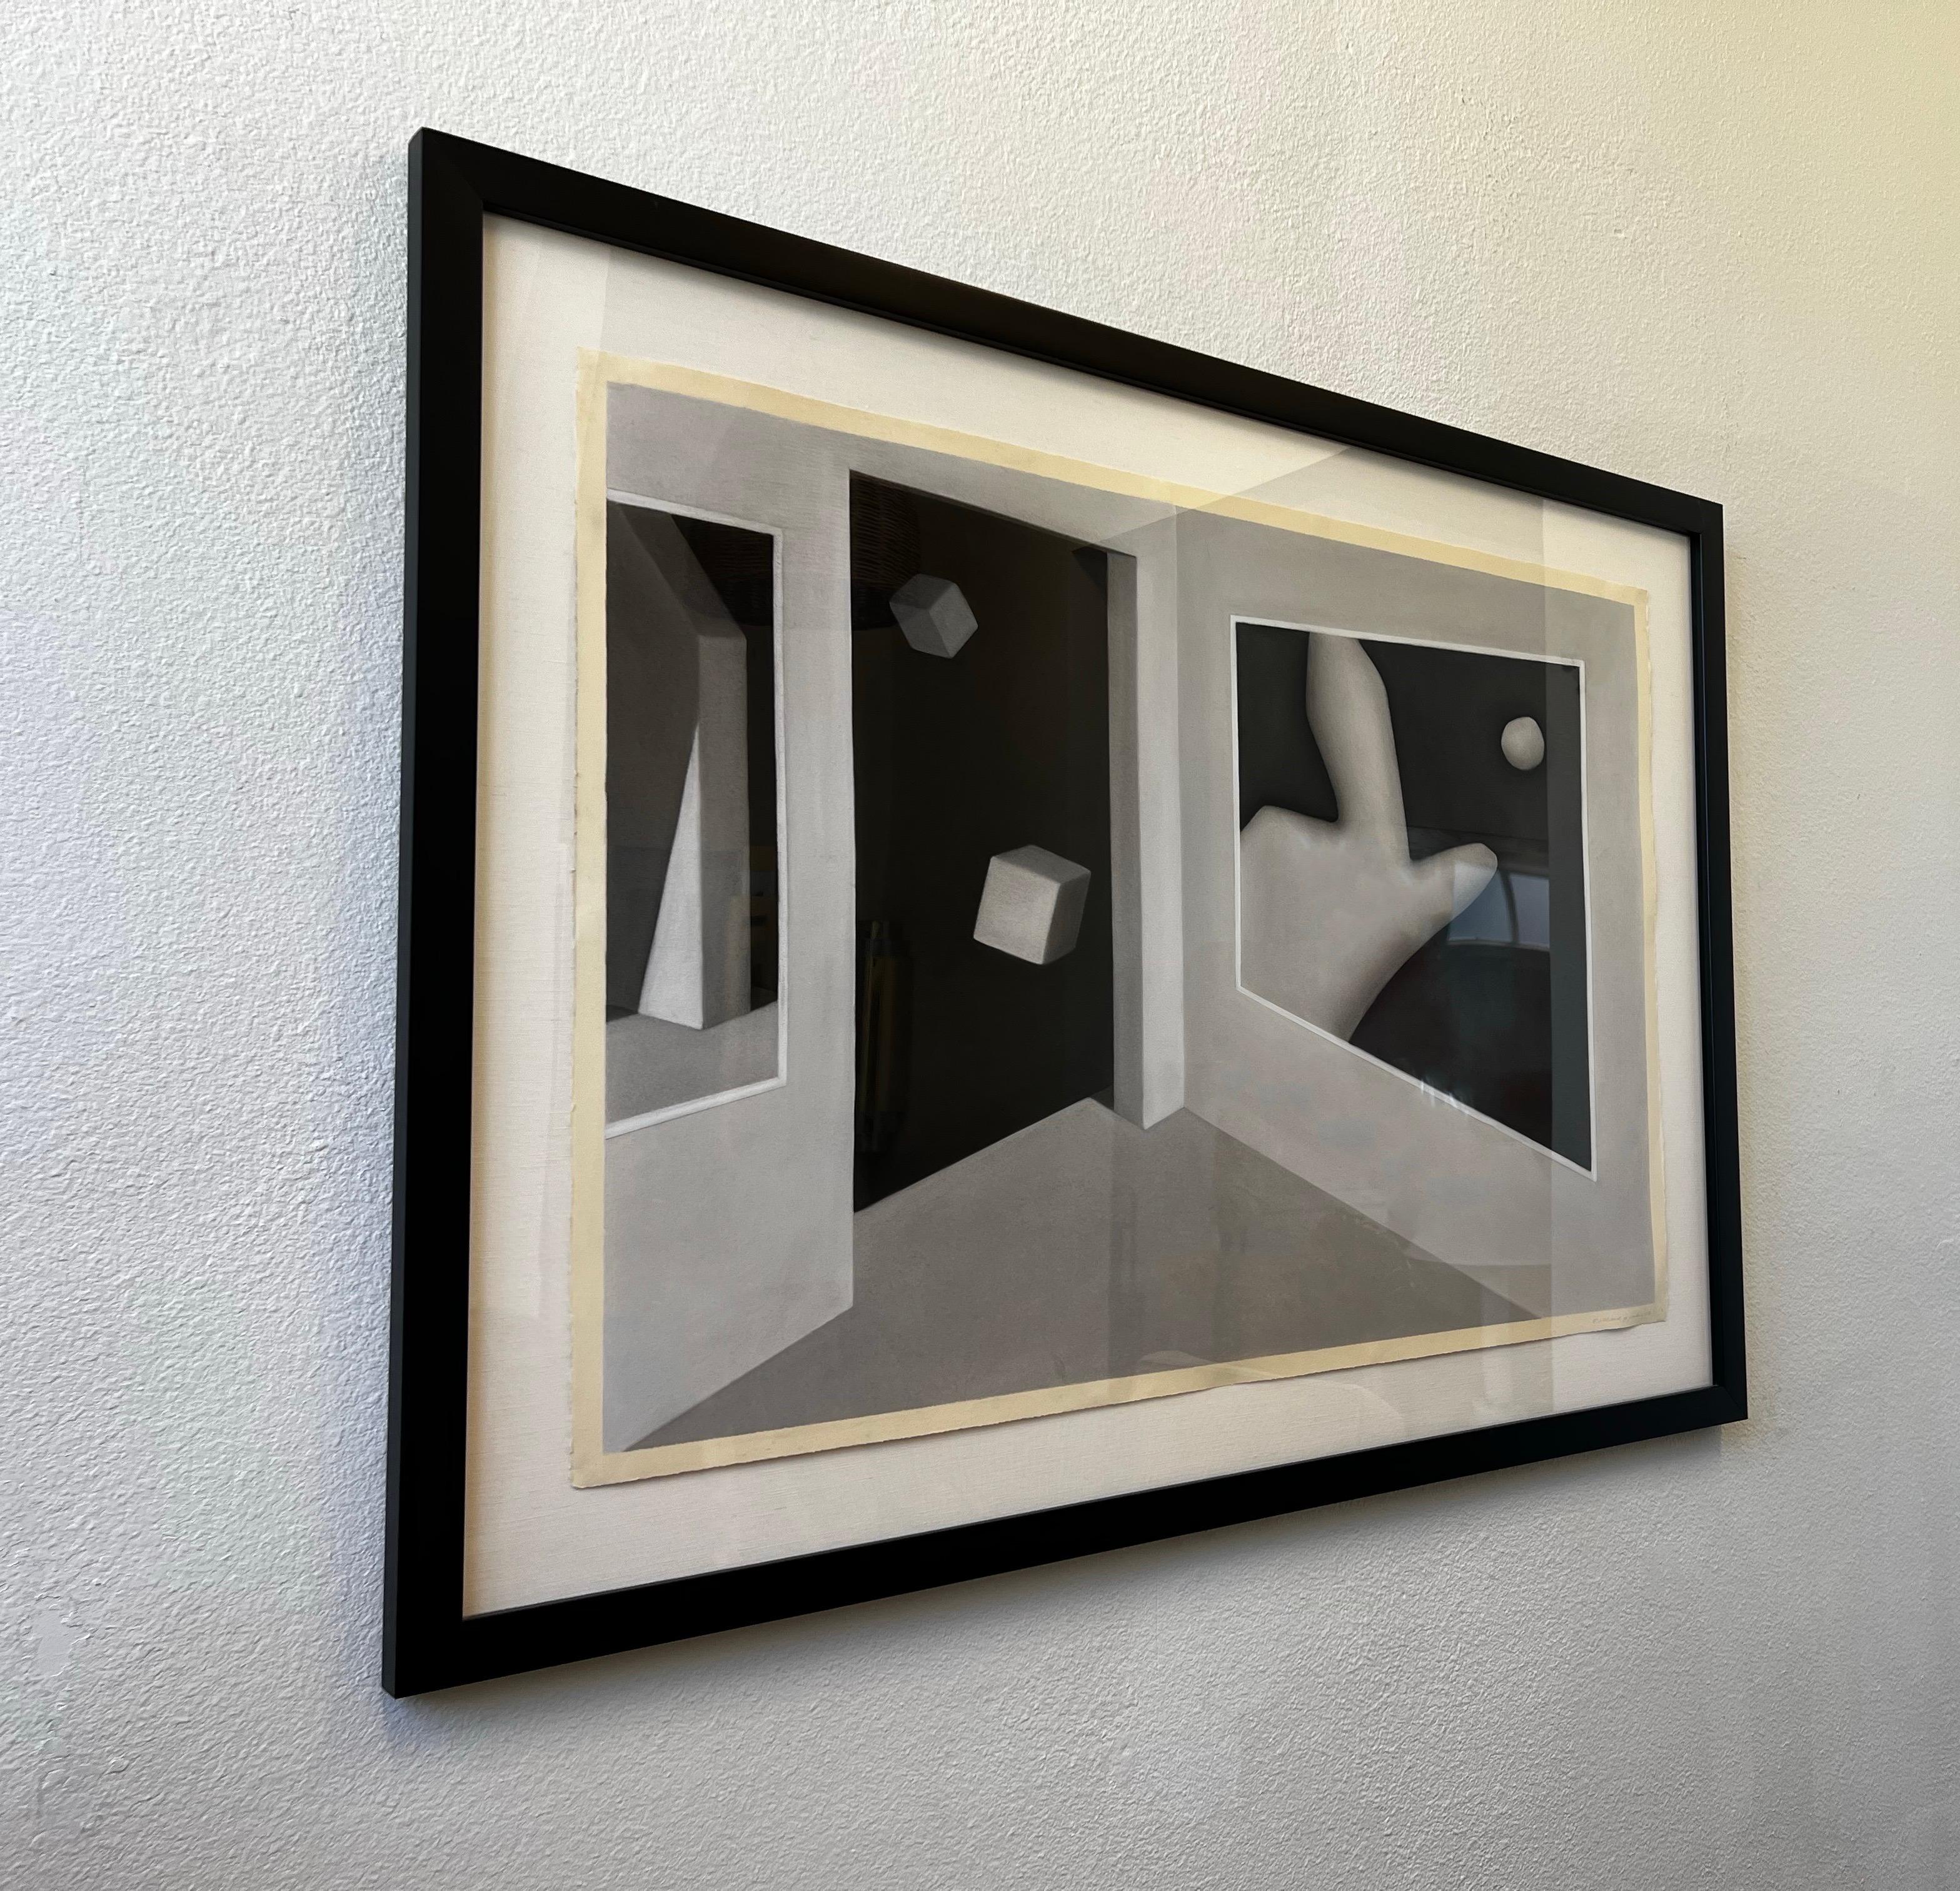 Großes 1986 Surrealistisches Kohlebild auf Papier des amerikanischen Künstlers Richard Parker. 

Bleistift signiert Richard G. Parker 1986 in der rechten unteren Ecke. 
Neu gerahmt mit einem schwarz lackierten Holzrahmen und UV-geschütztem Acryl.